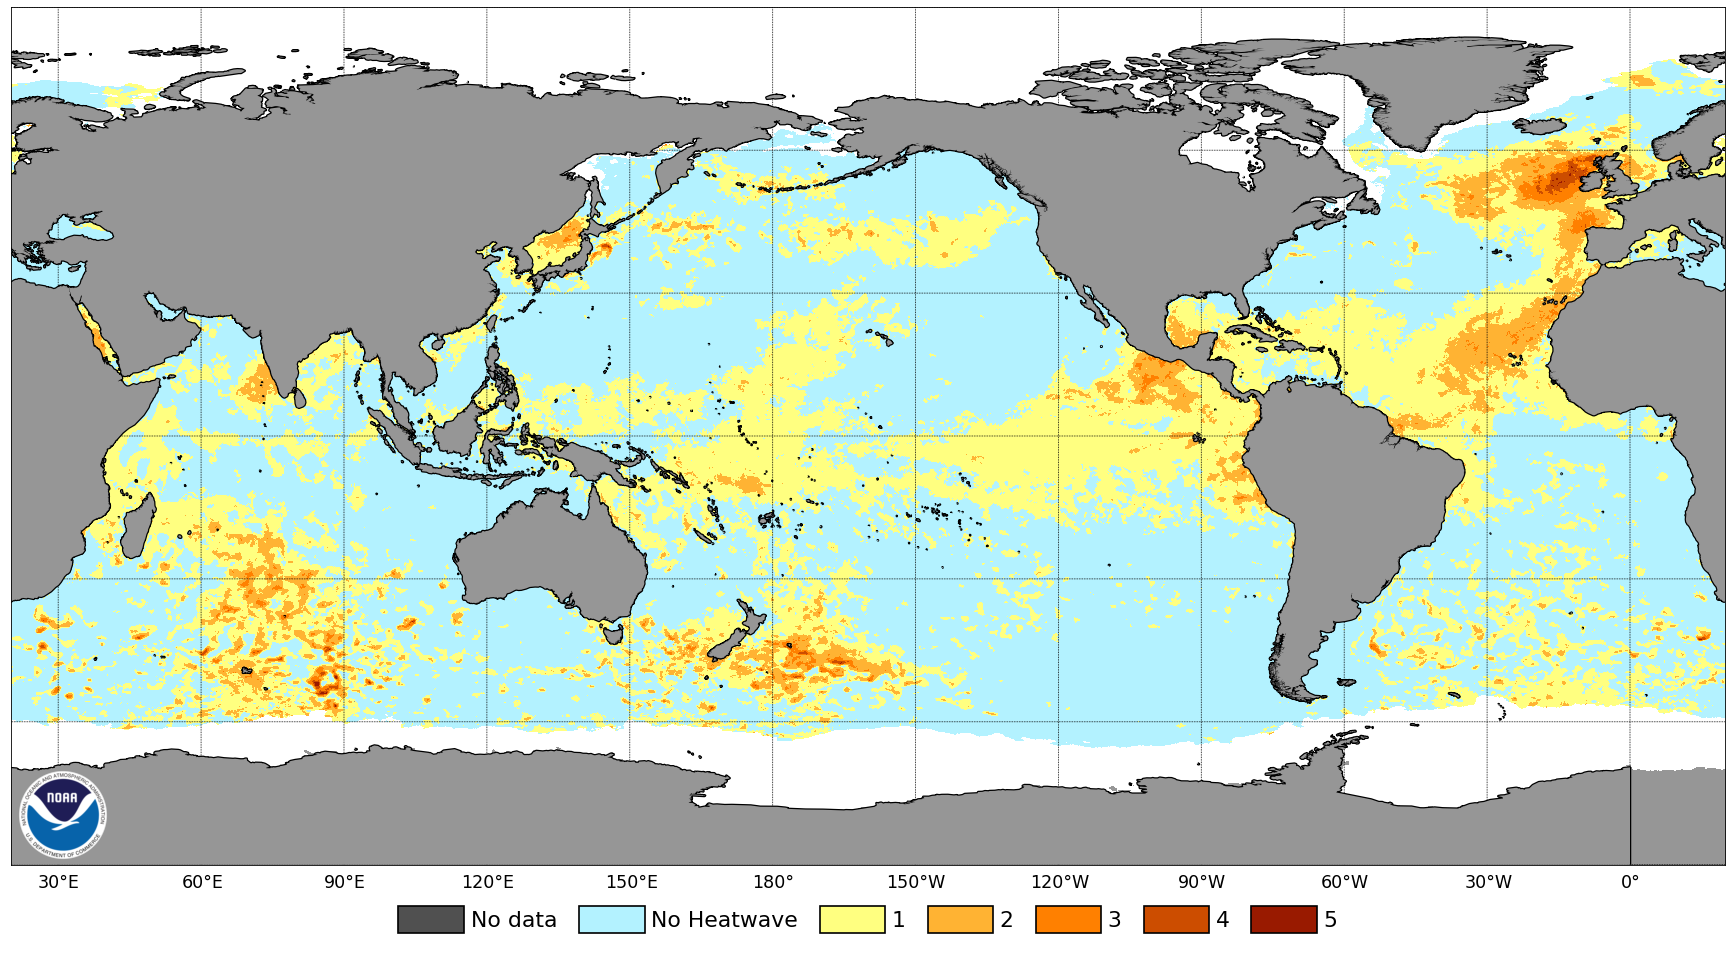 Mapa del mundo con manchas amarillas, naranjas y rojas sobre los océanos